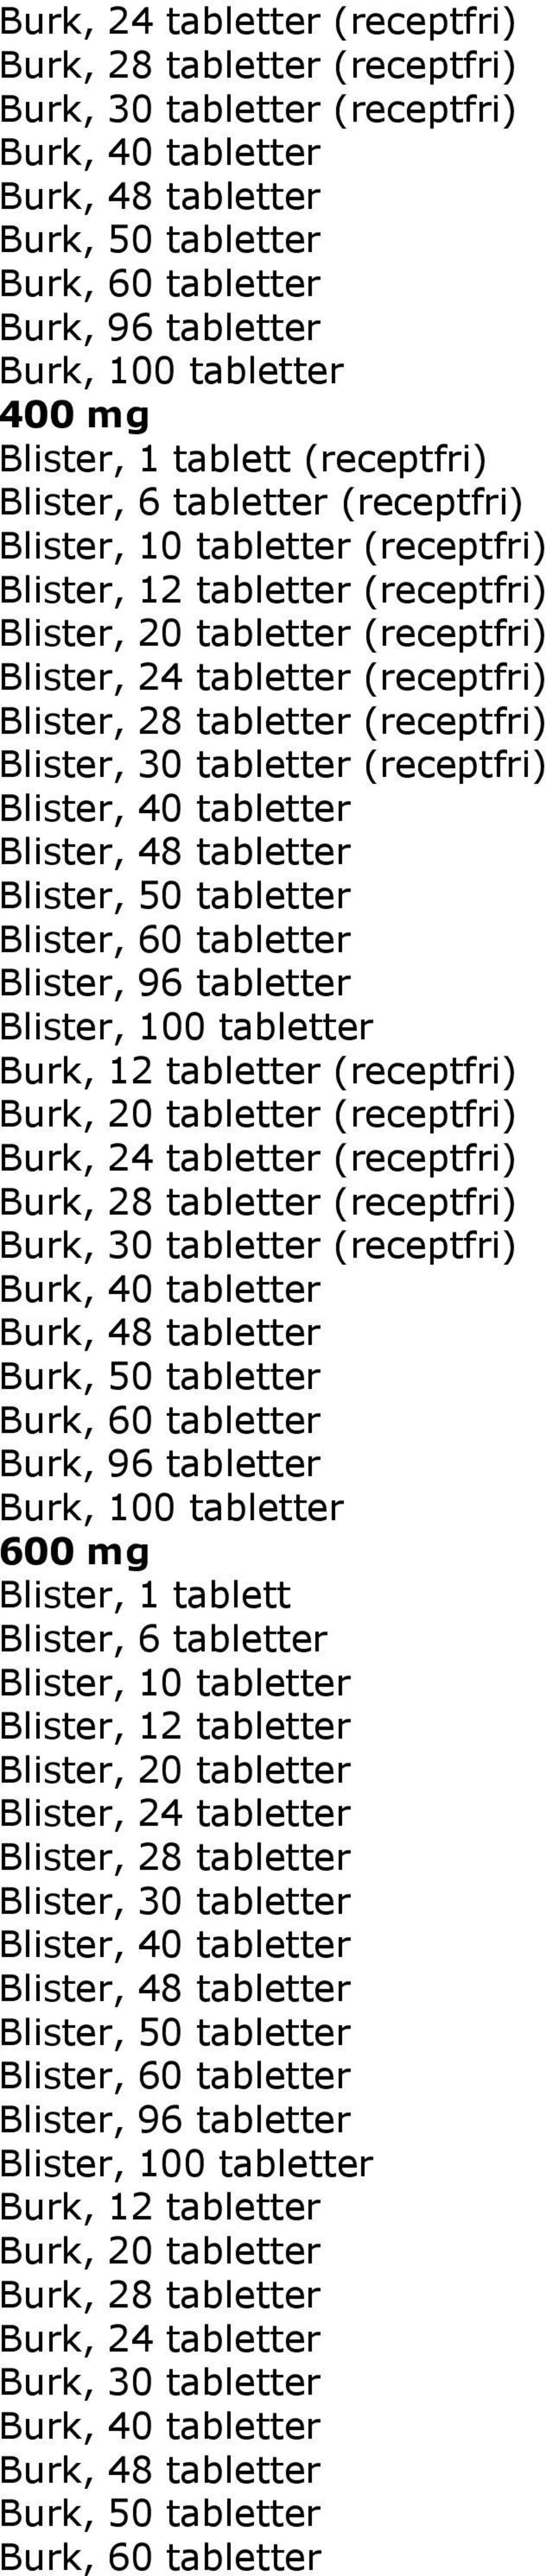 (receptfri) Blister, 40 tabletter Blister, 48 tabletter Blister, 96 tabletter Burk, 12 tabletter (receptfri) Burk, 20 tabletter (receptfri) Burk, 24 tabletter (receptfri) Burk, 28 tabletter